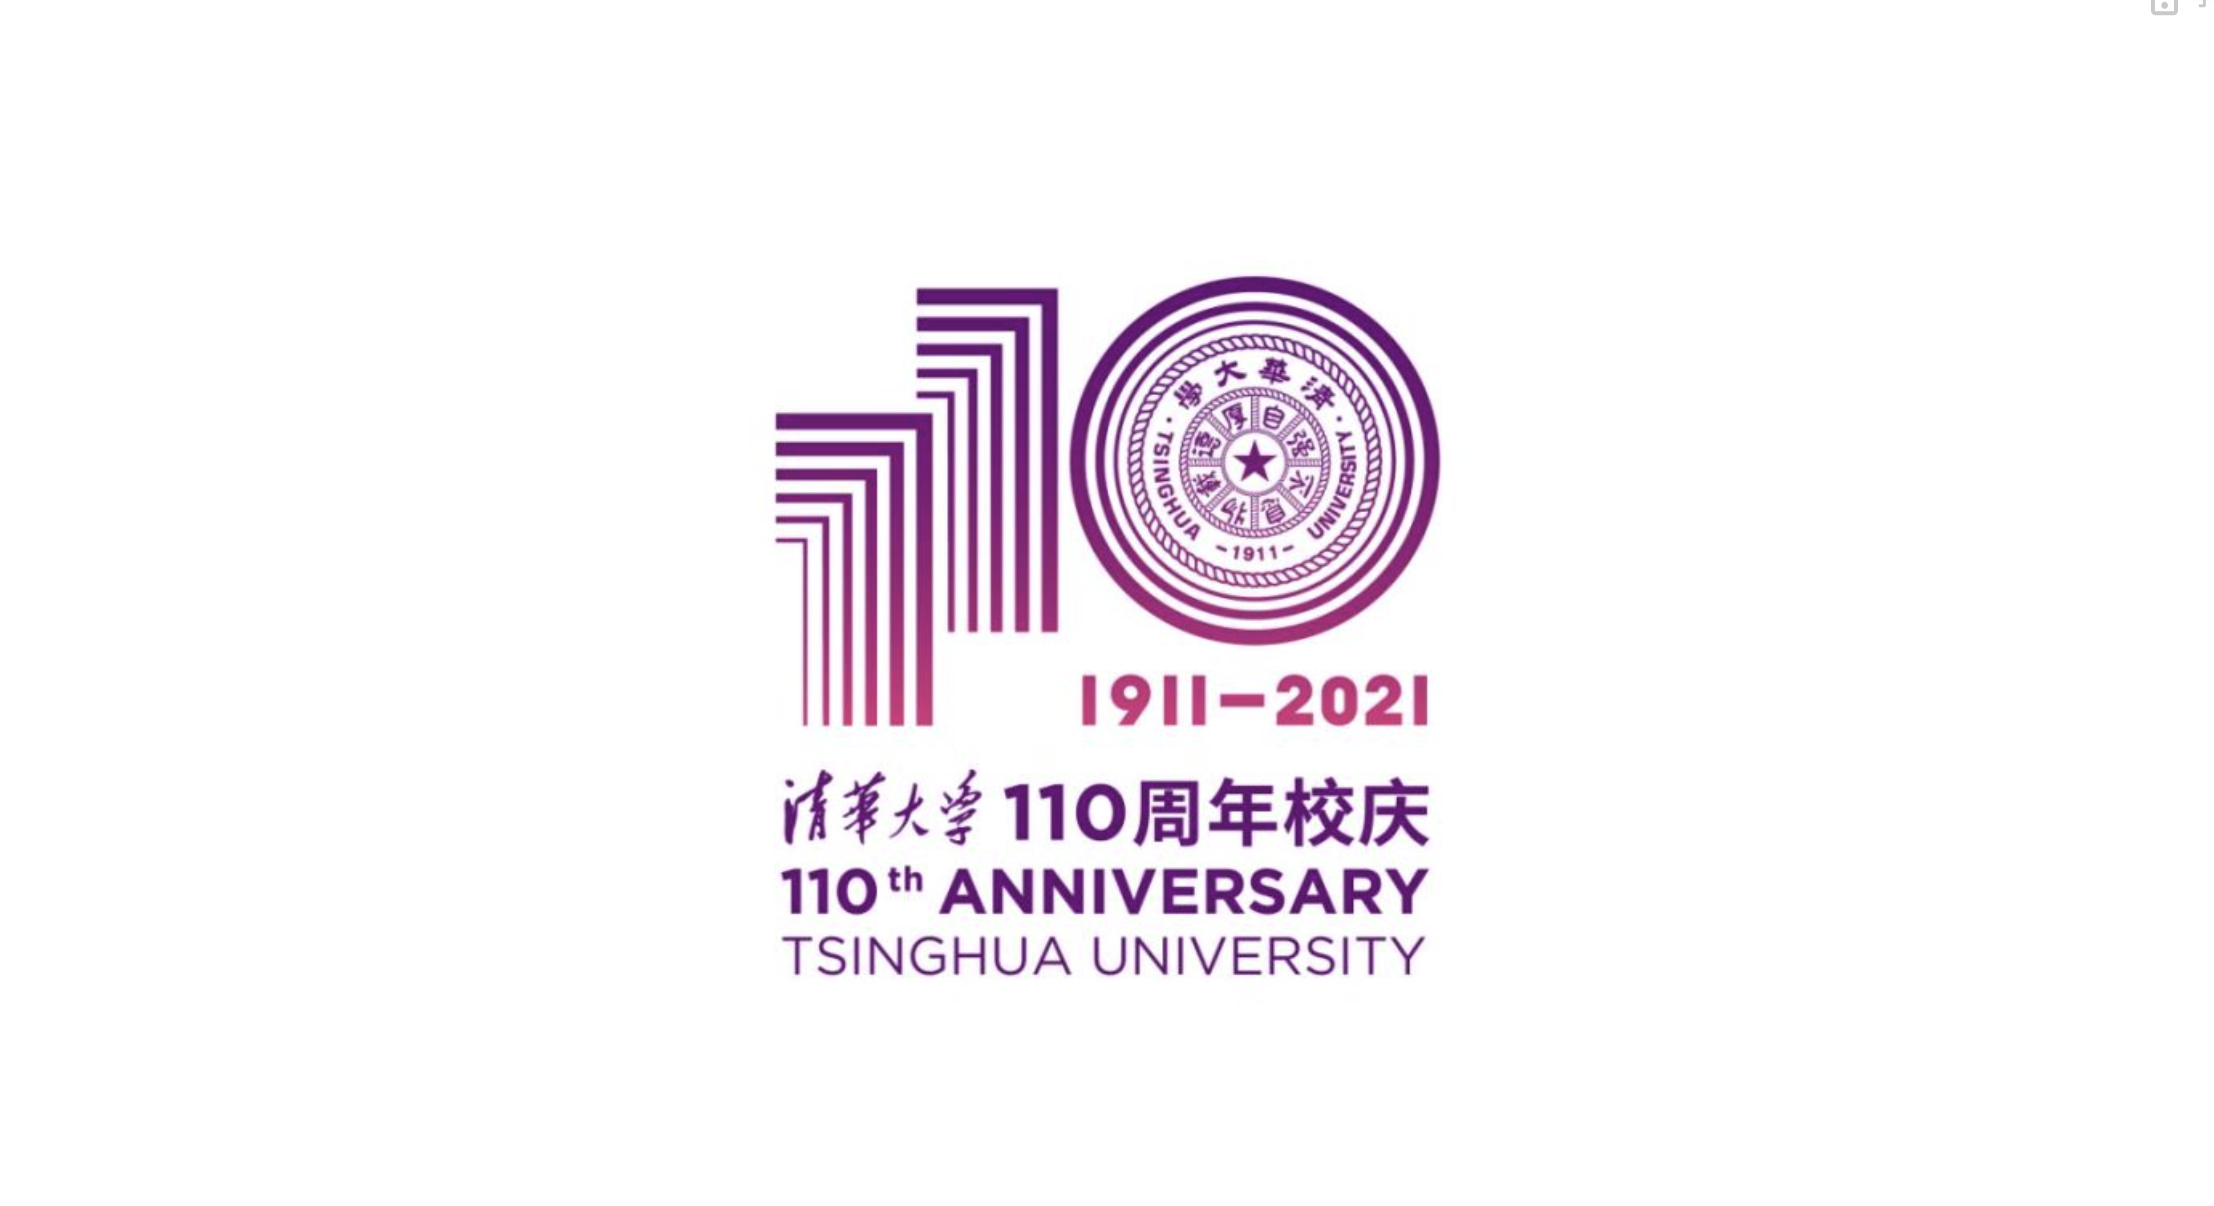 清华大学建校110周年标志也于今日正式亮相,以阿拉伯数字"110"与清华